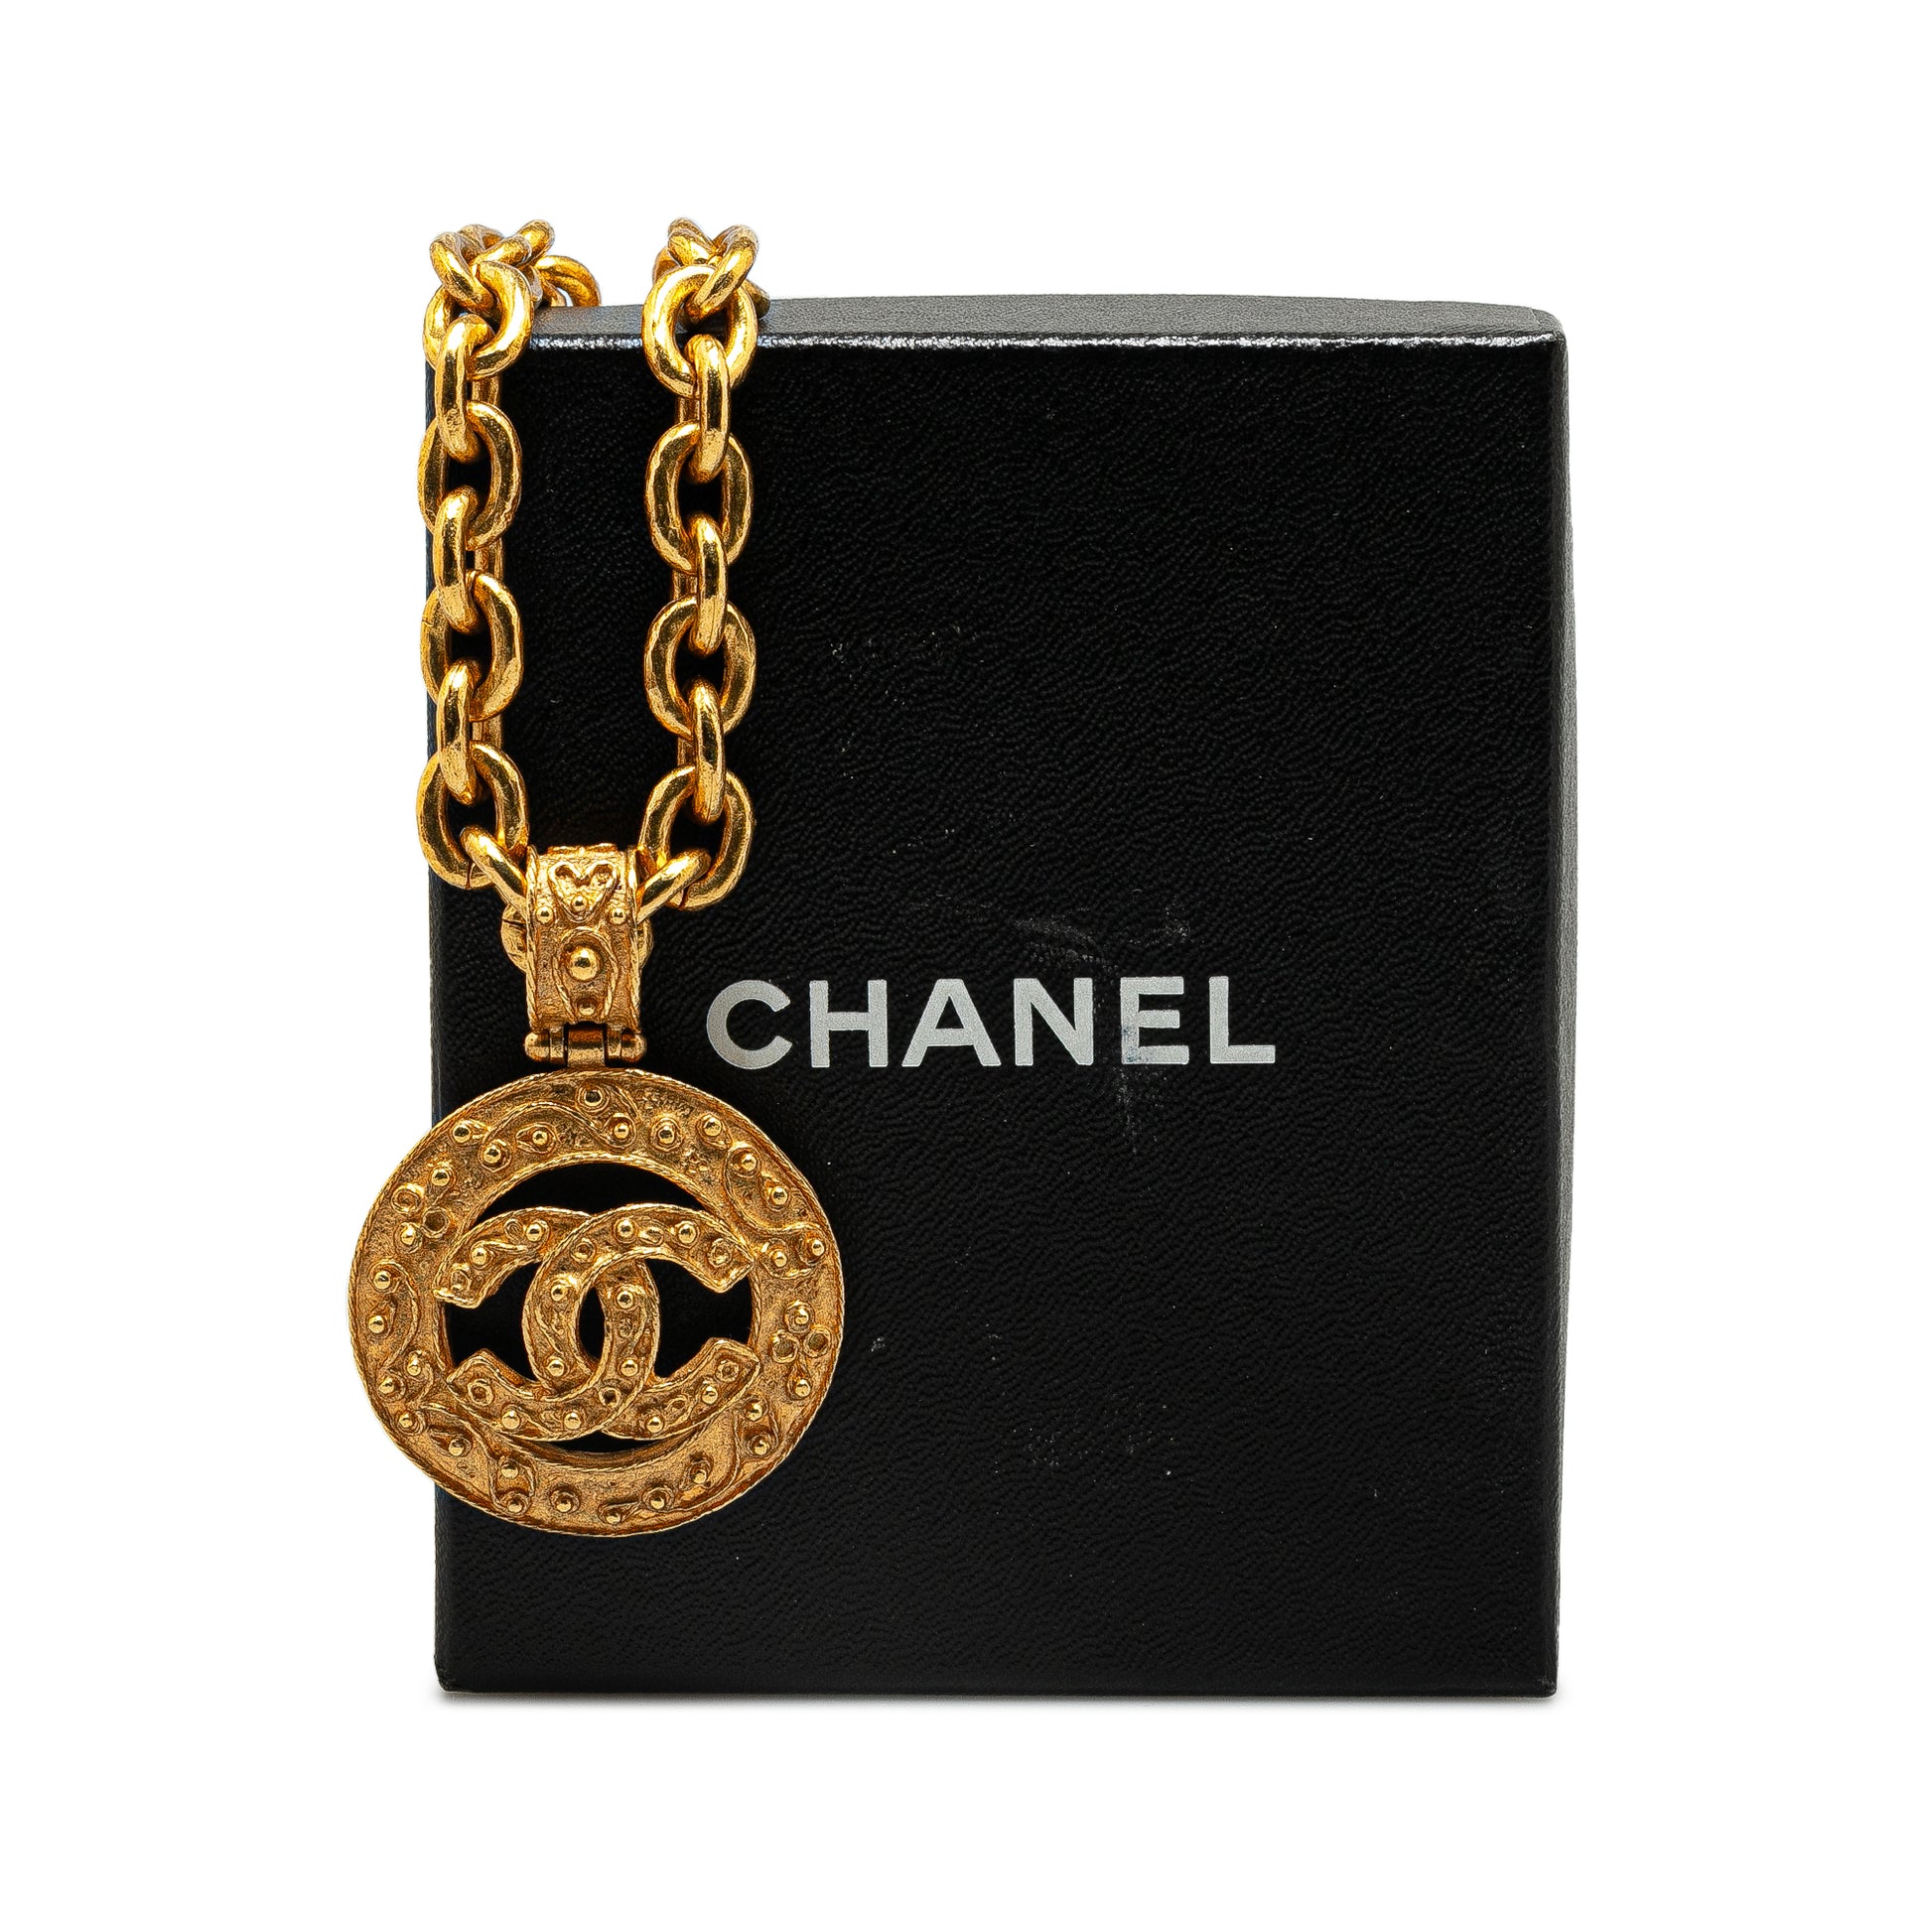 CC Logo Pendant Necklace Gold - Gaby Paris